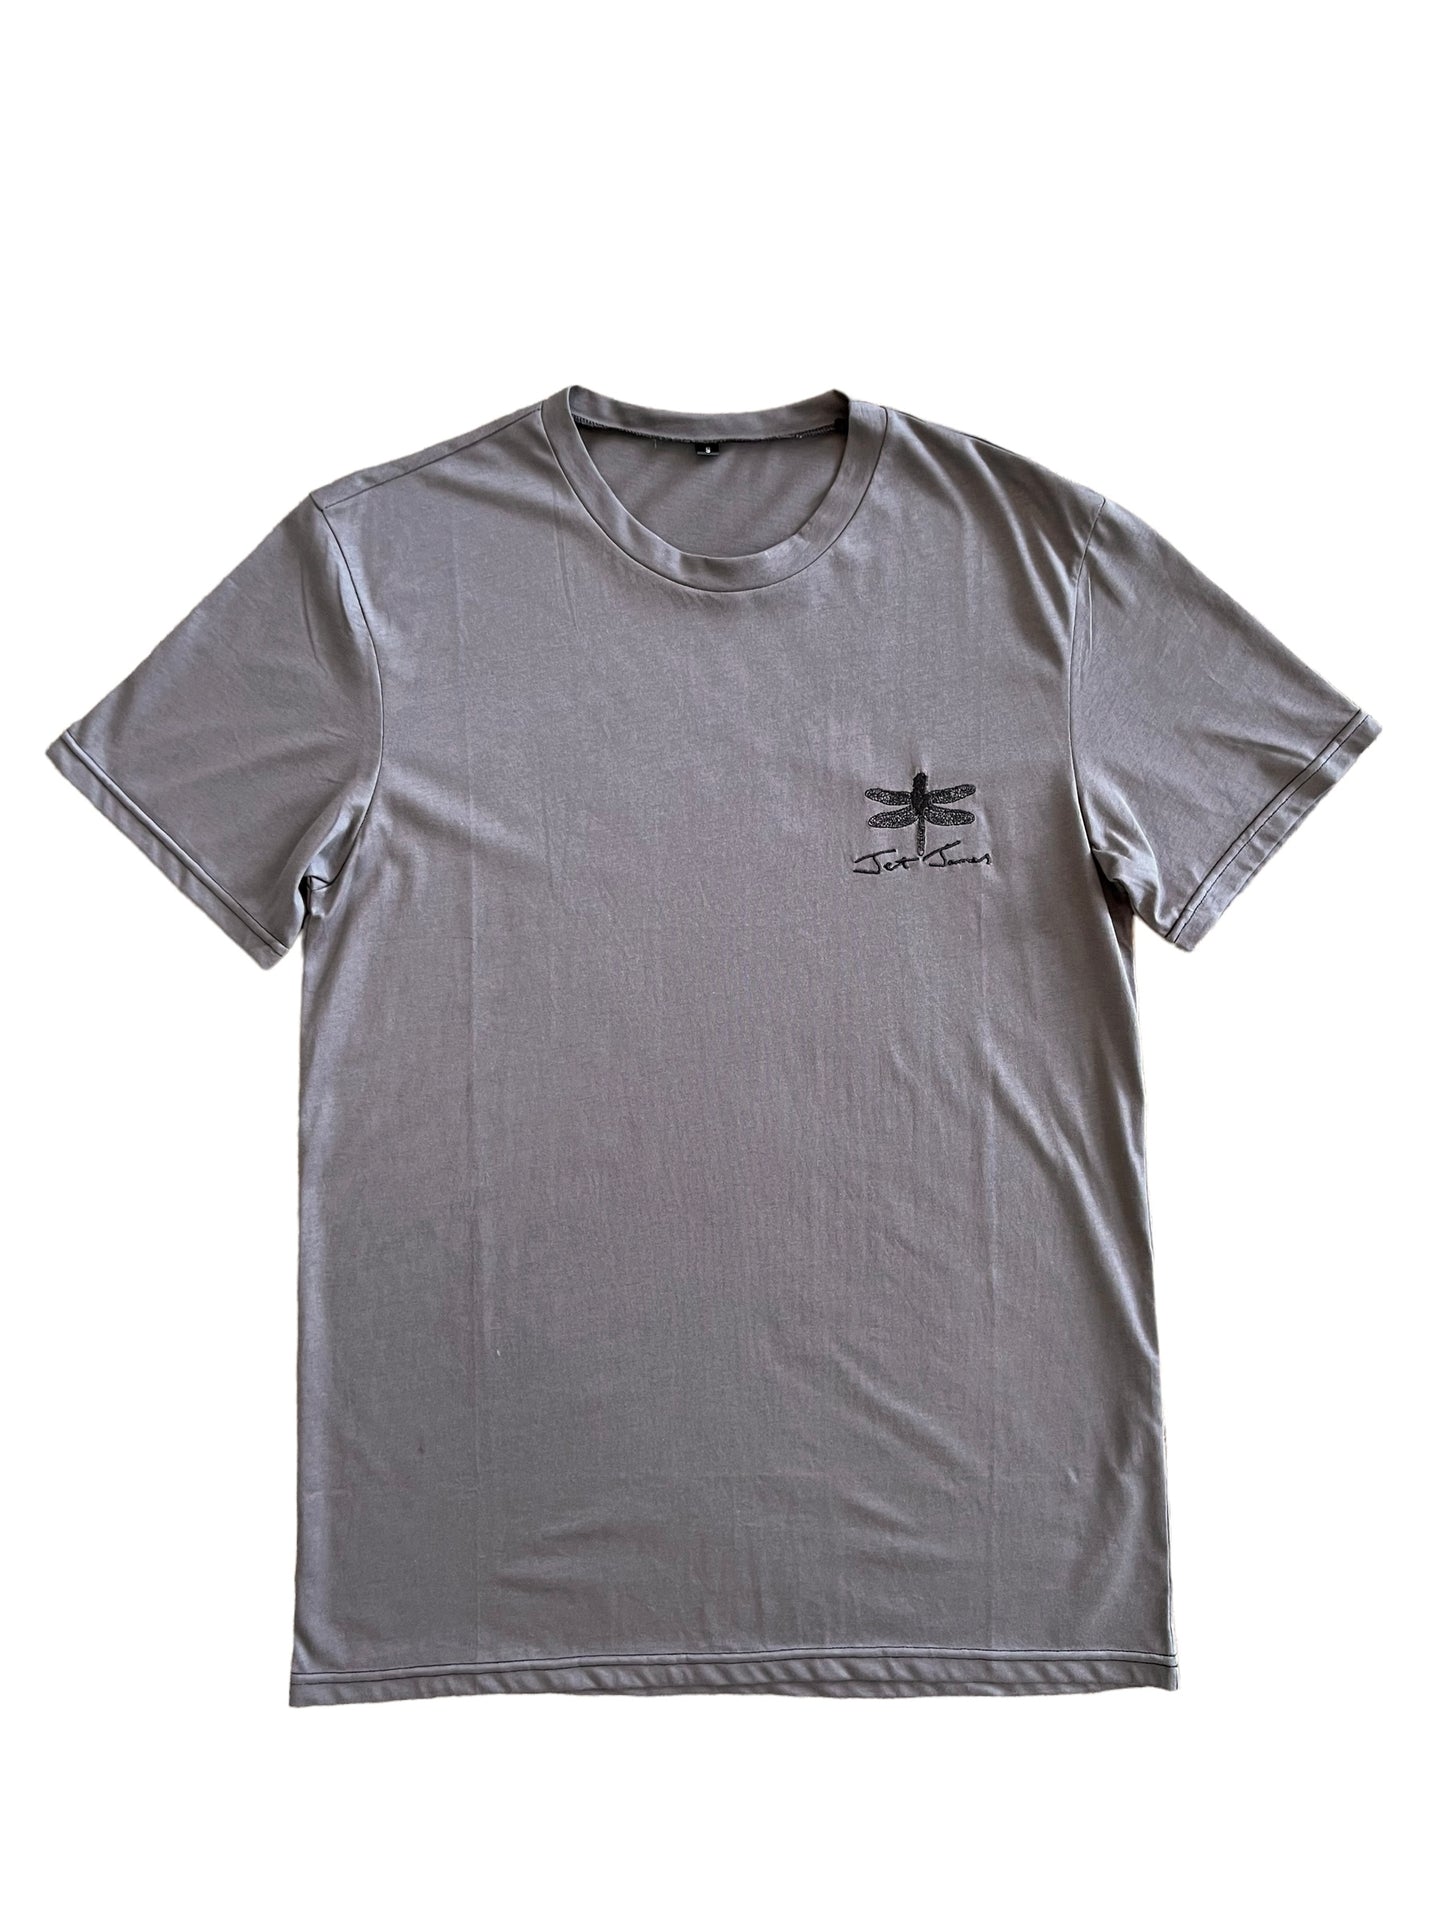 Jet James Plain Cotton T-Shirt